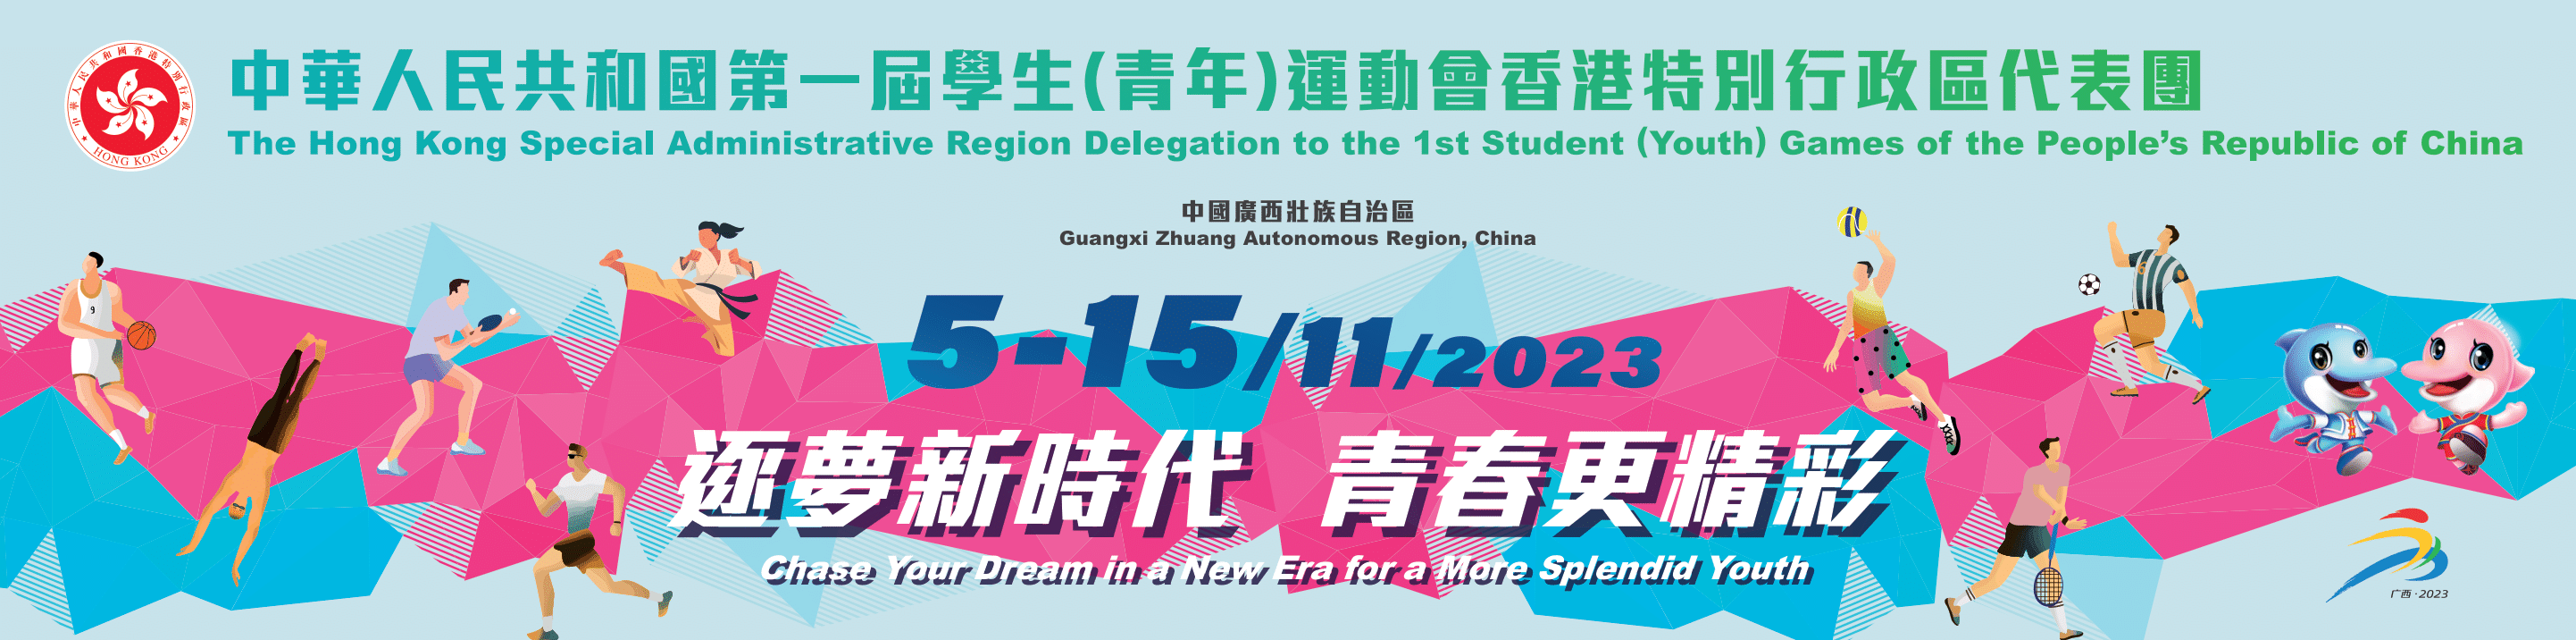 中华人民共和国第一届学生（青年）运动会香港特别行政区代表团